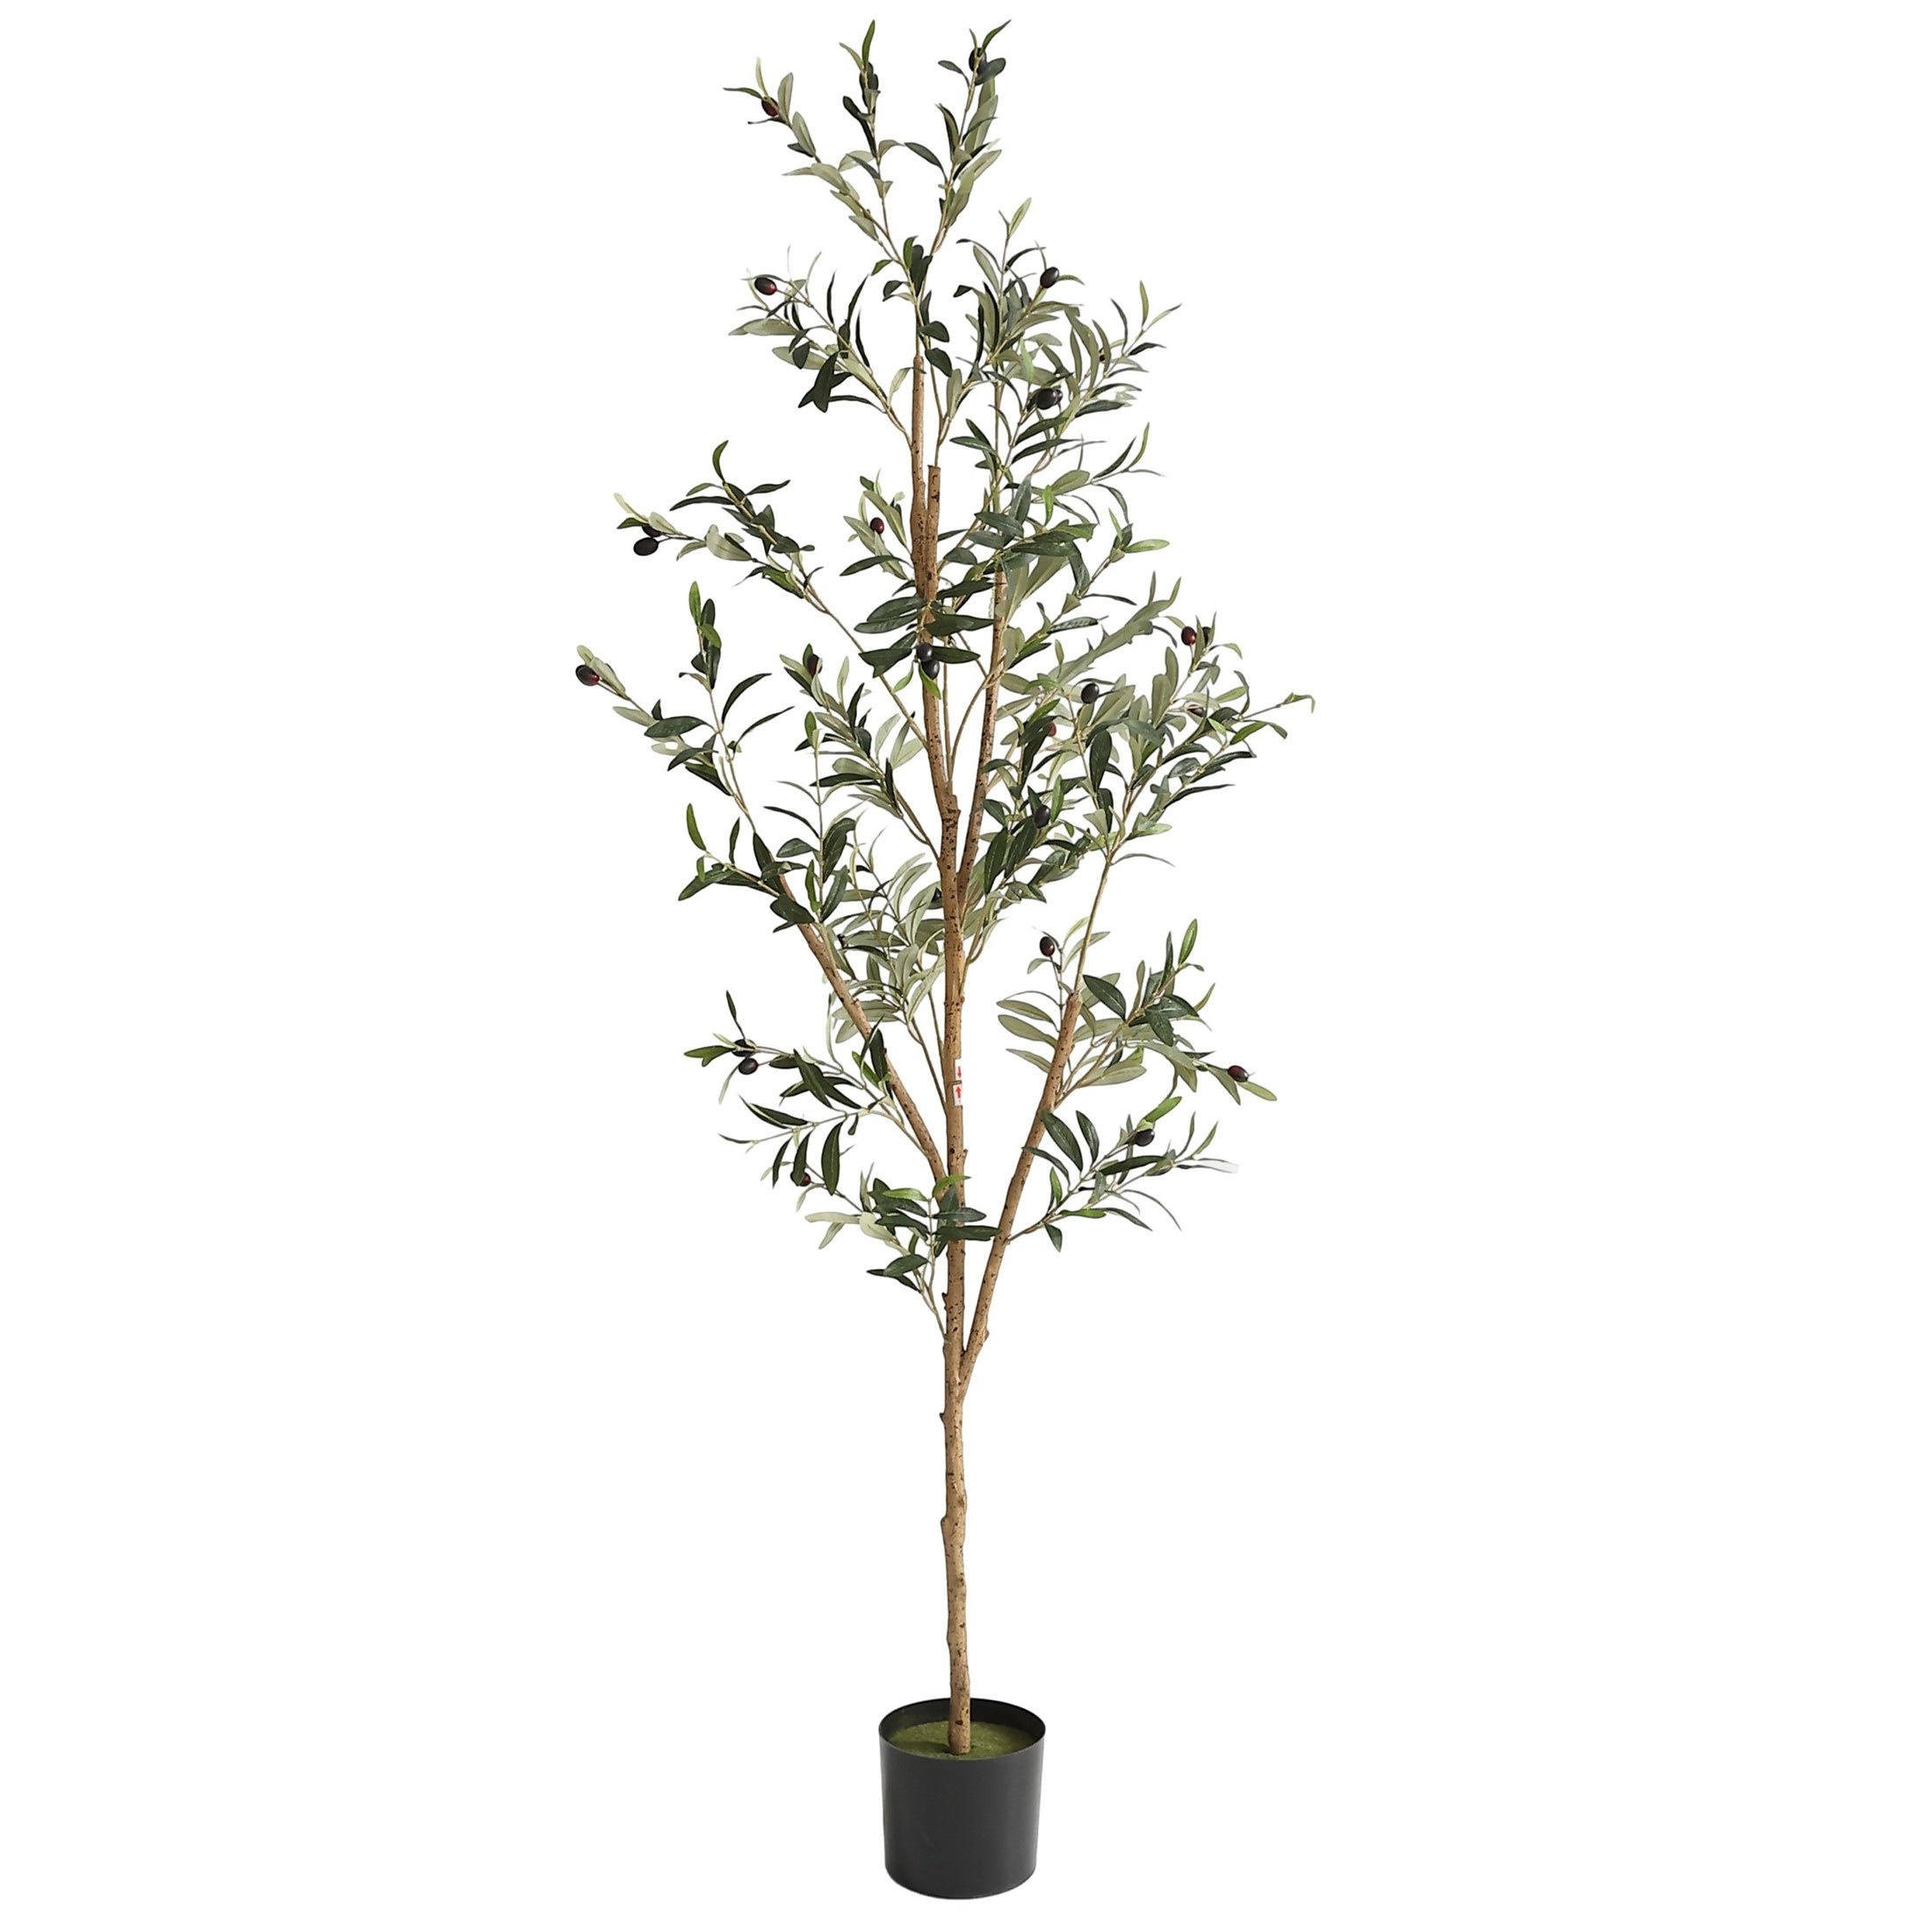 Árbol de olivo artificial, planta de olivo artificial de 6 pies en maceta,  16 ramas y frutas, adecuada para salas de estar modernas, hogar, oficina